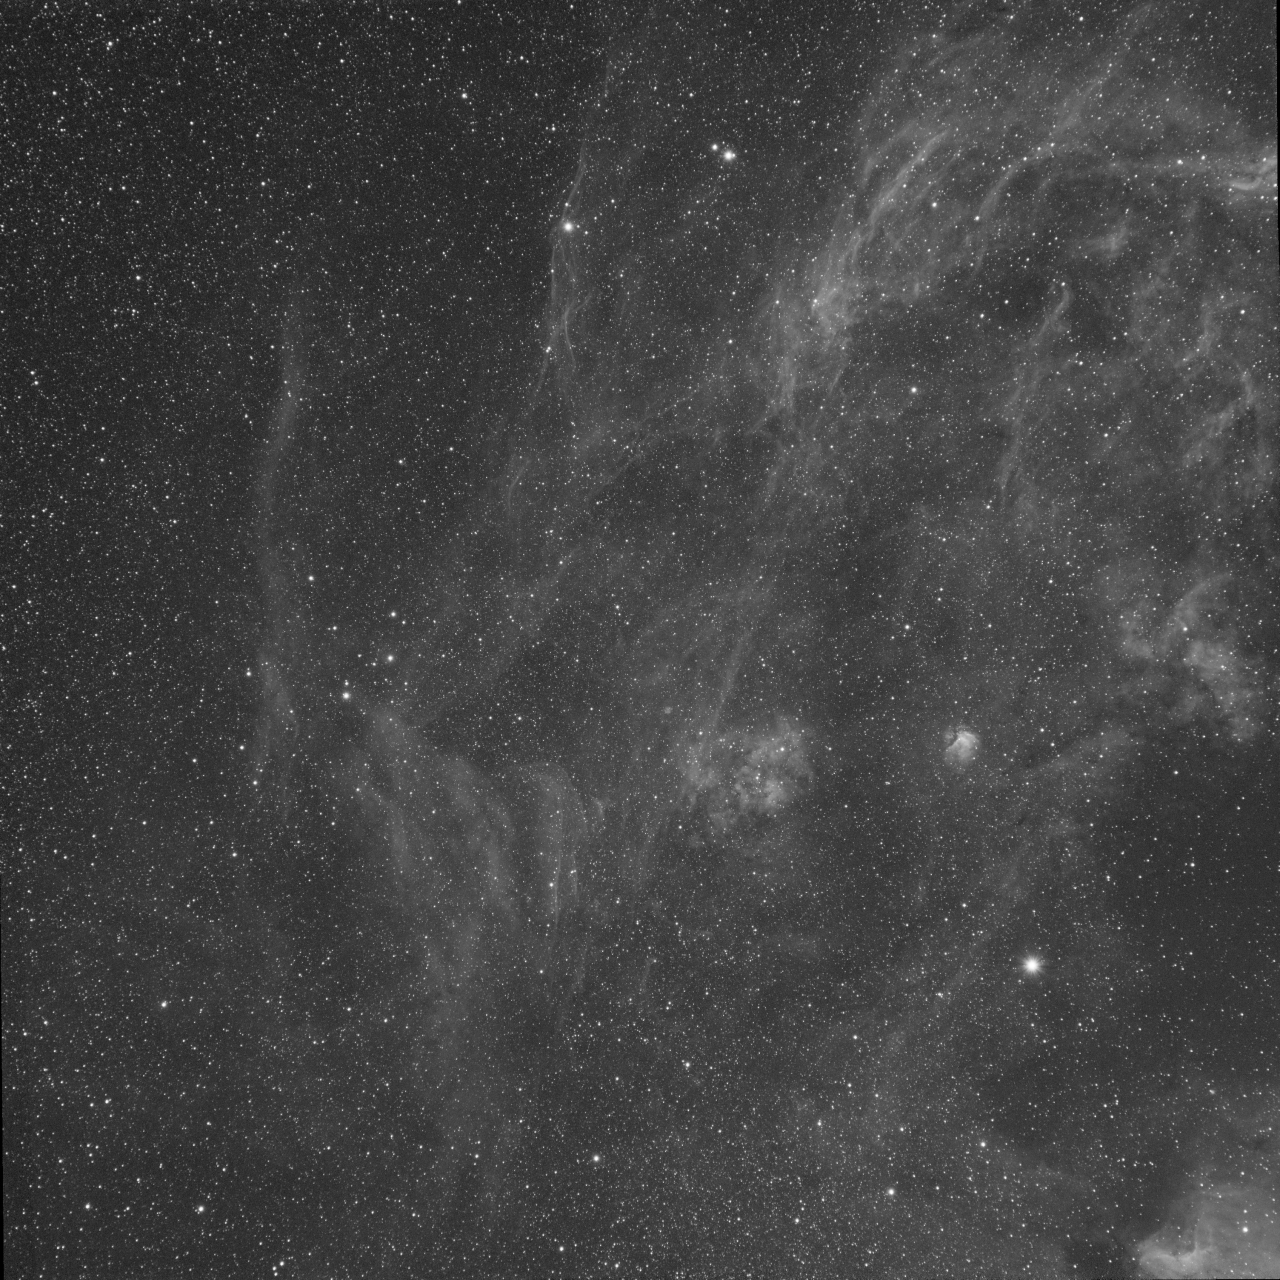 Cygnus near Sh2-115 - Ha